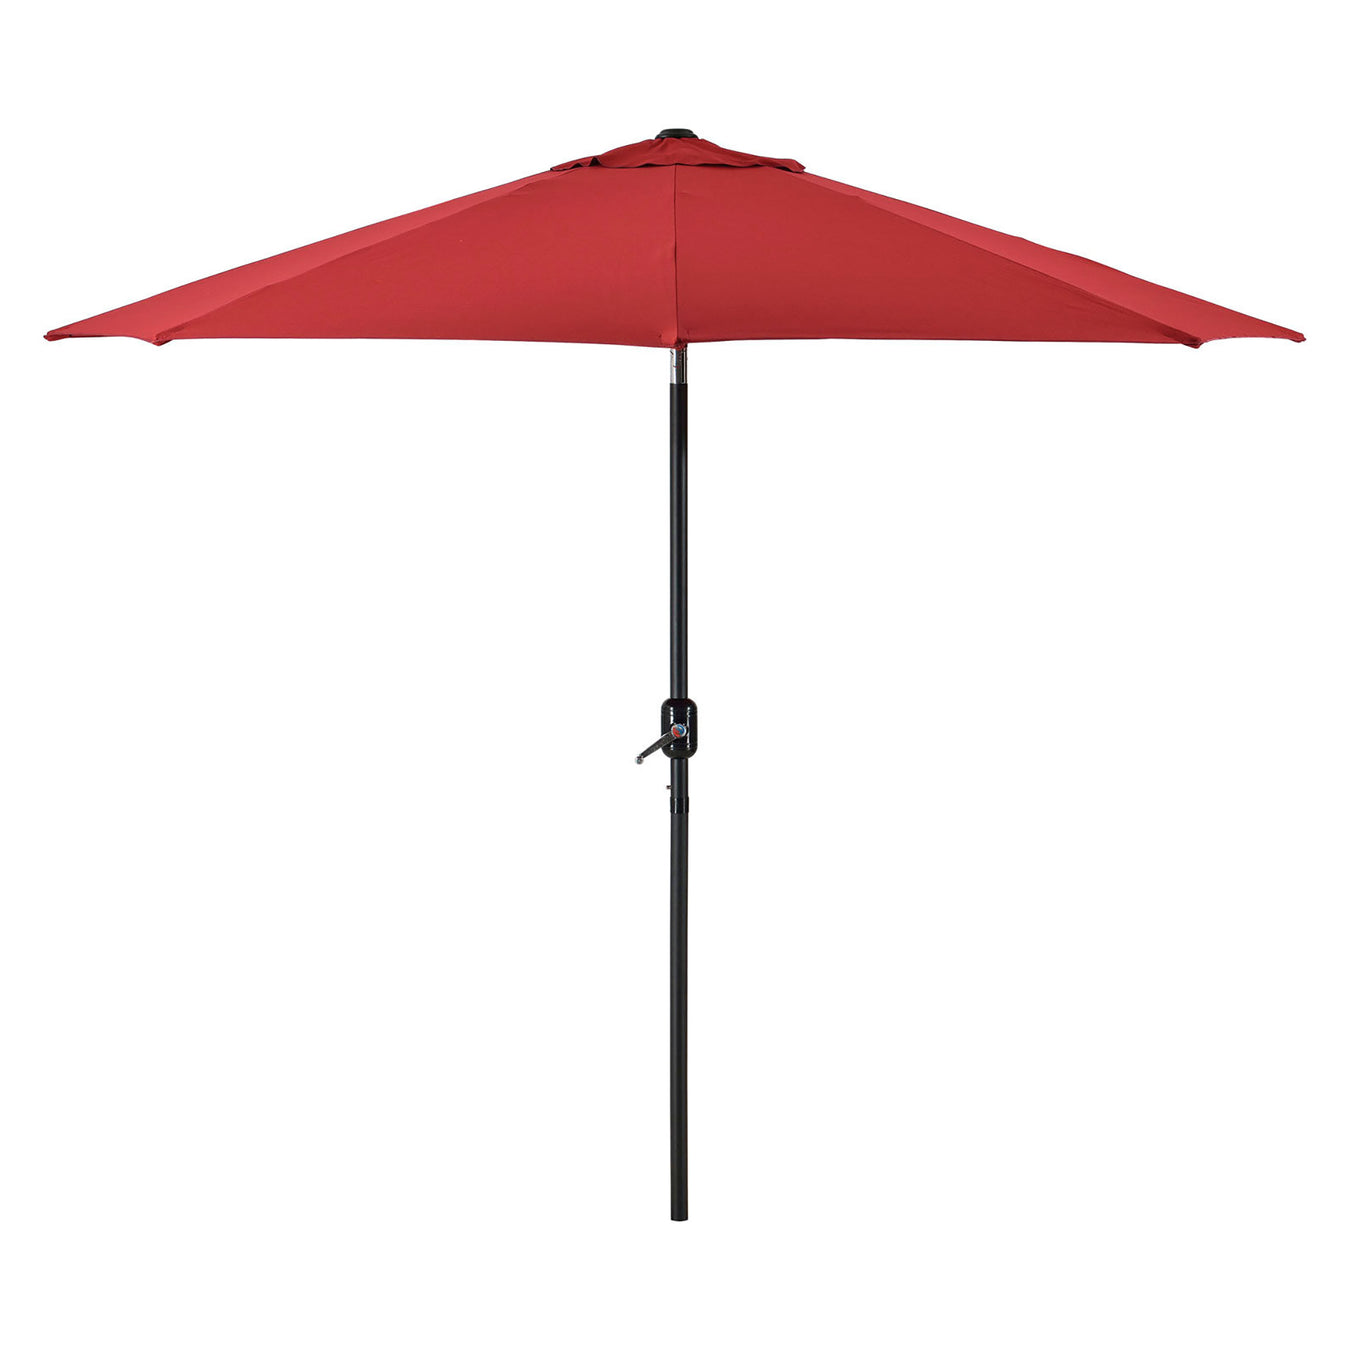 Picnic Umbrellas